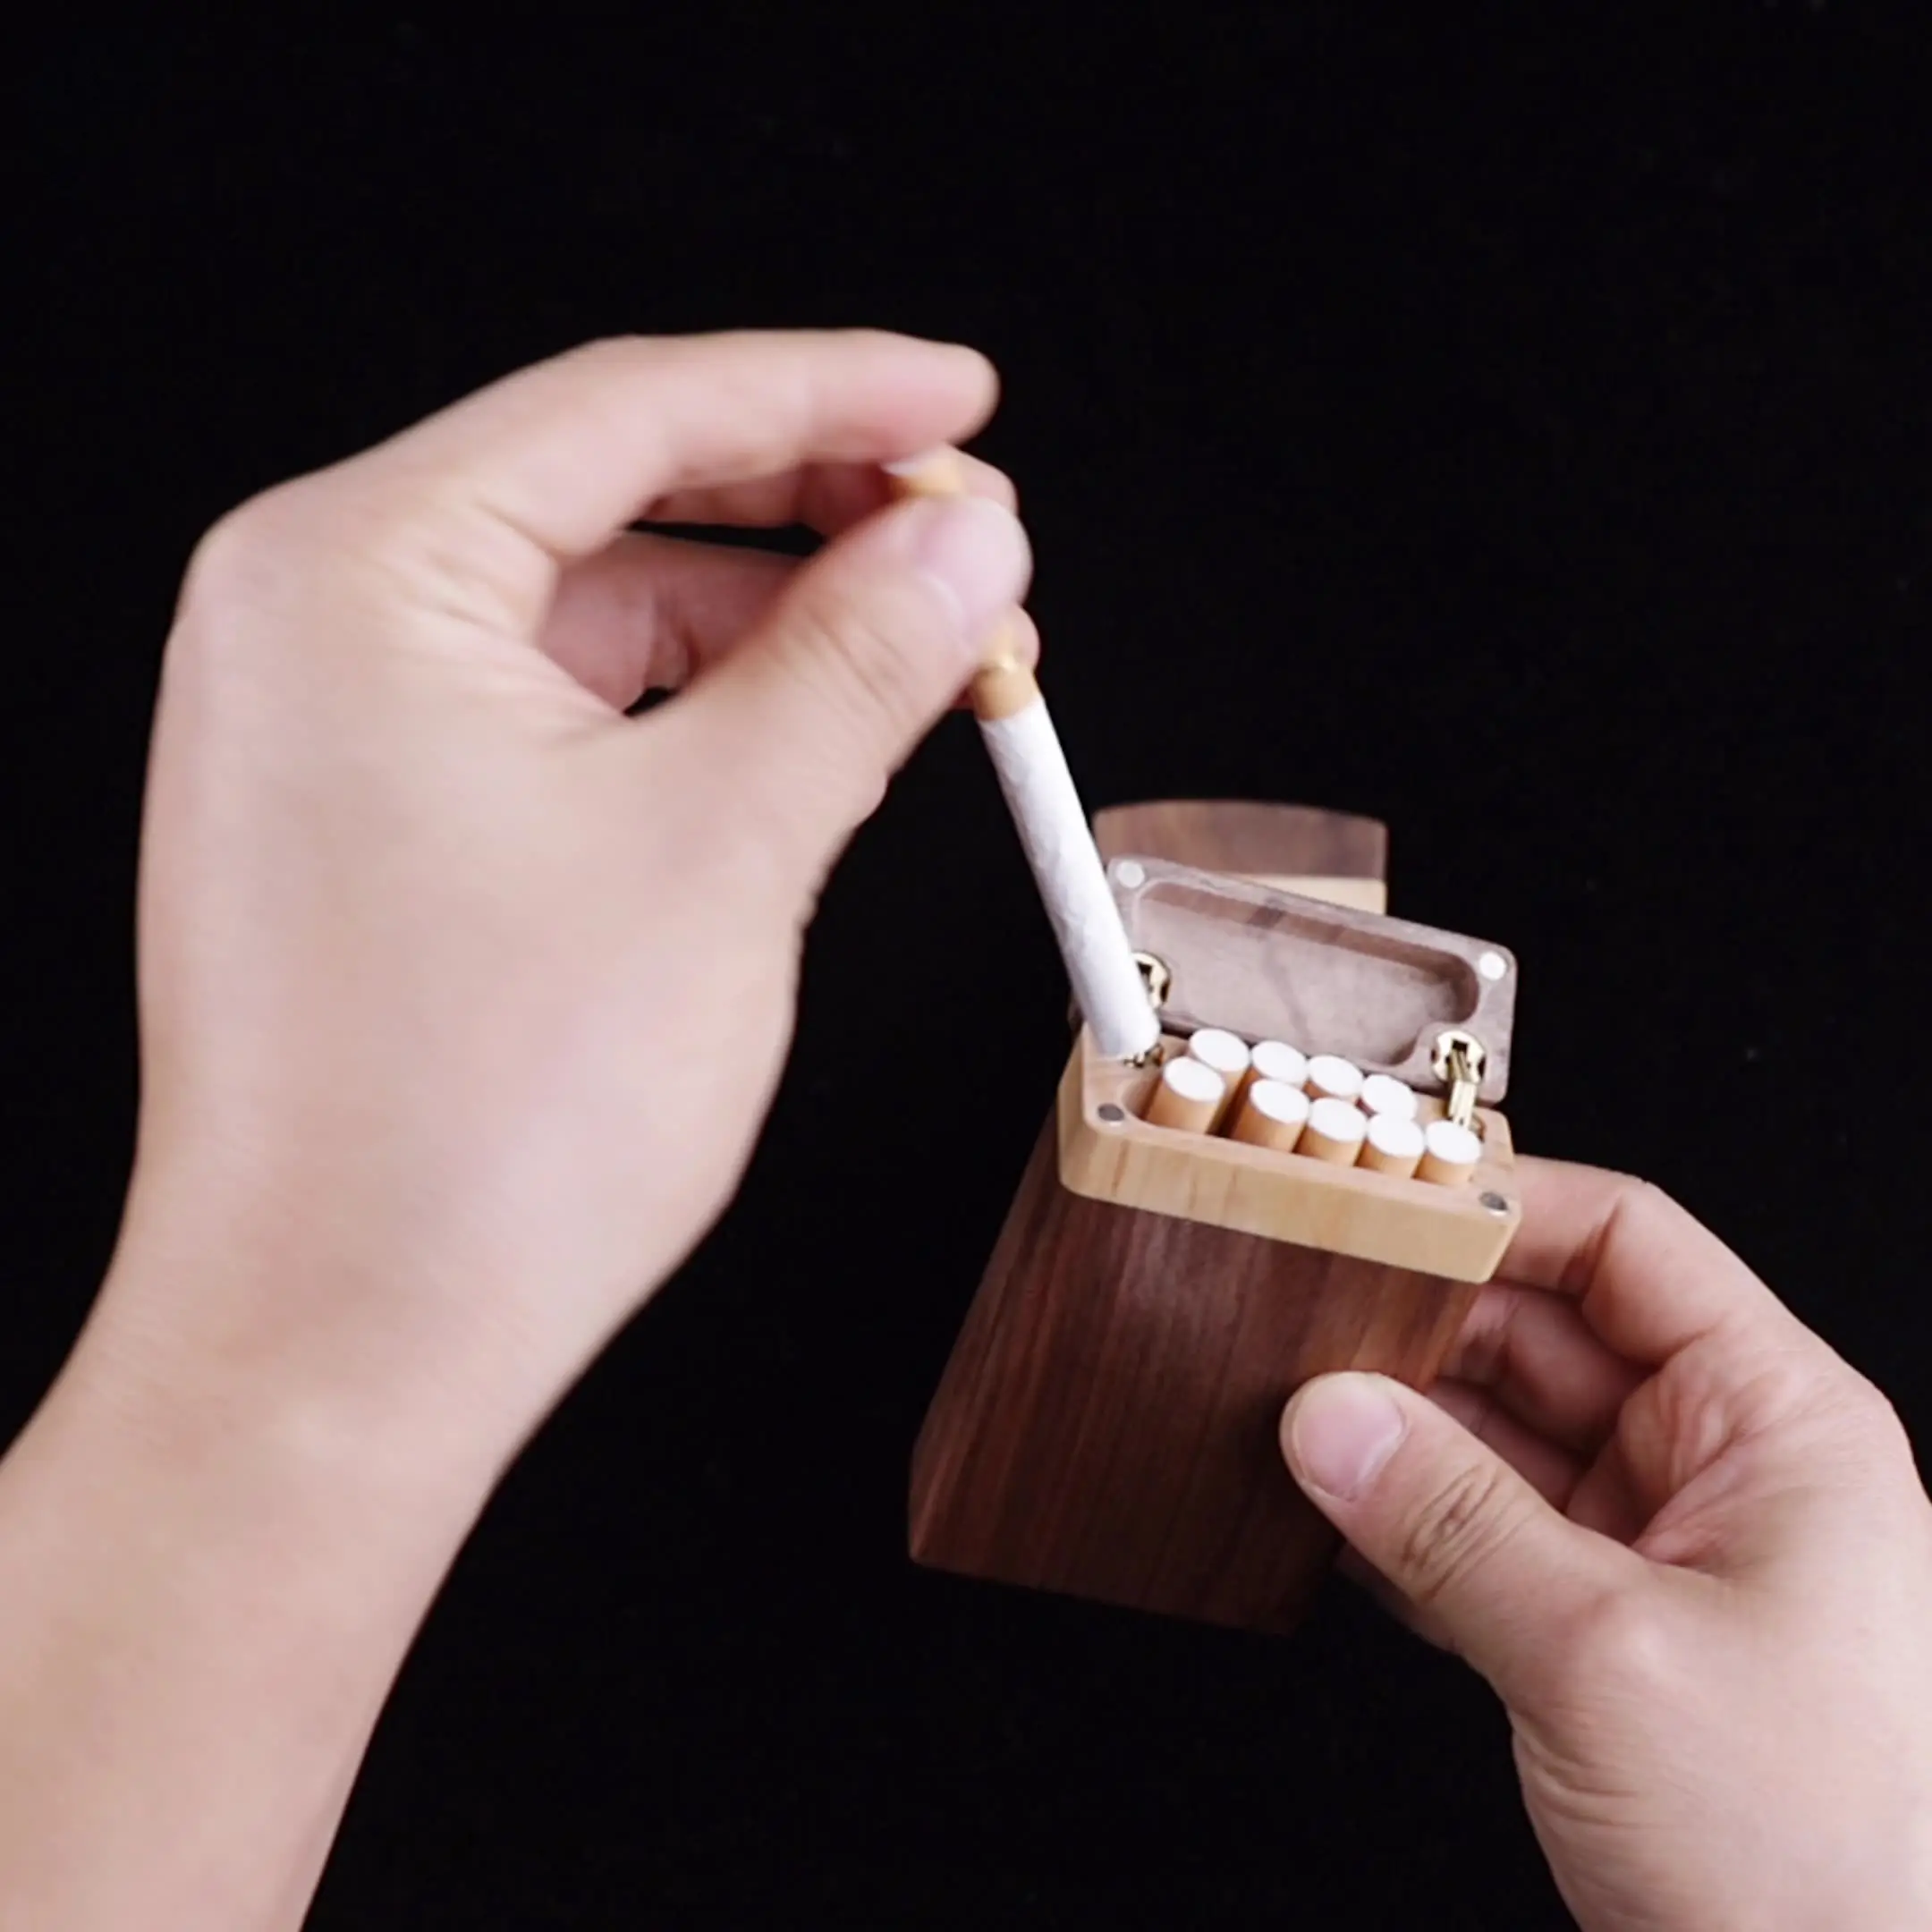 Produttori di supporti per scatole di sigarette in legno di noce nero personalizzato